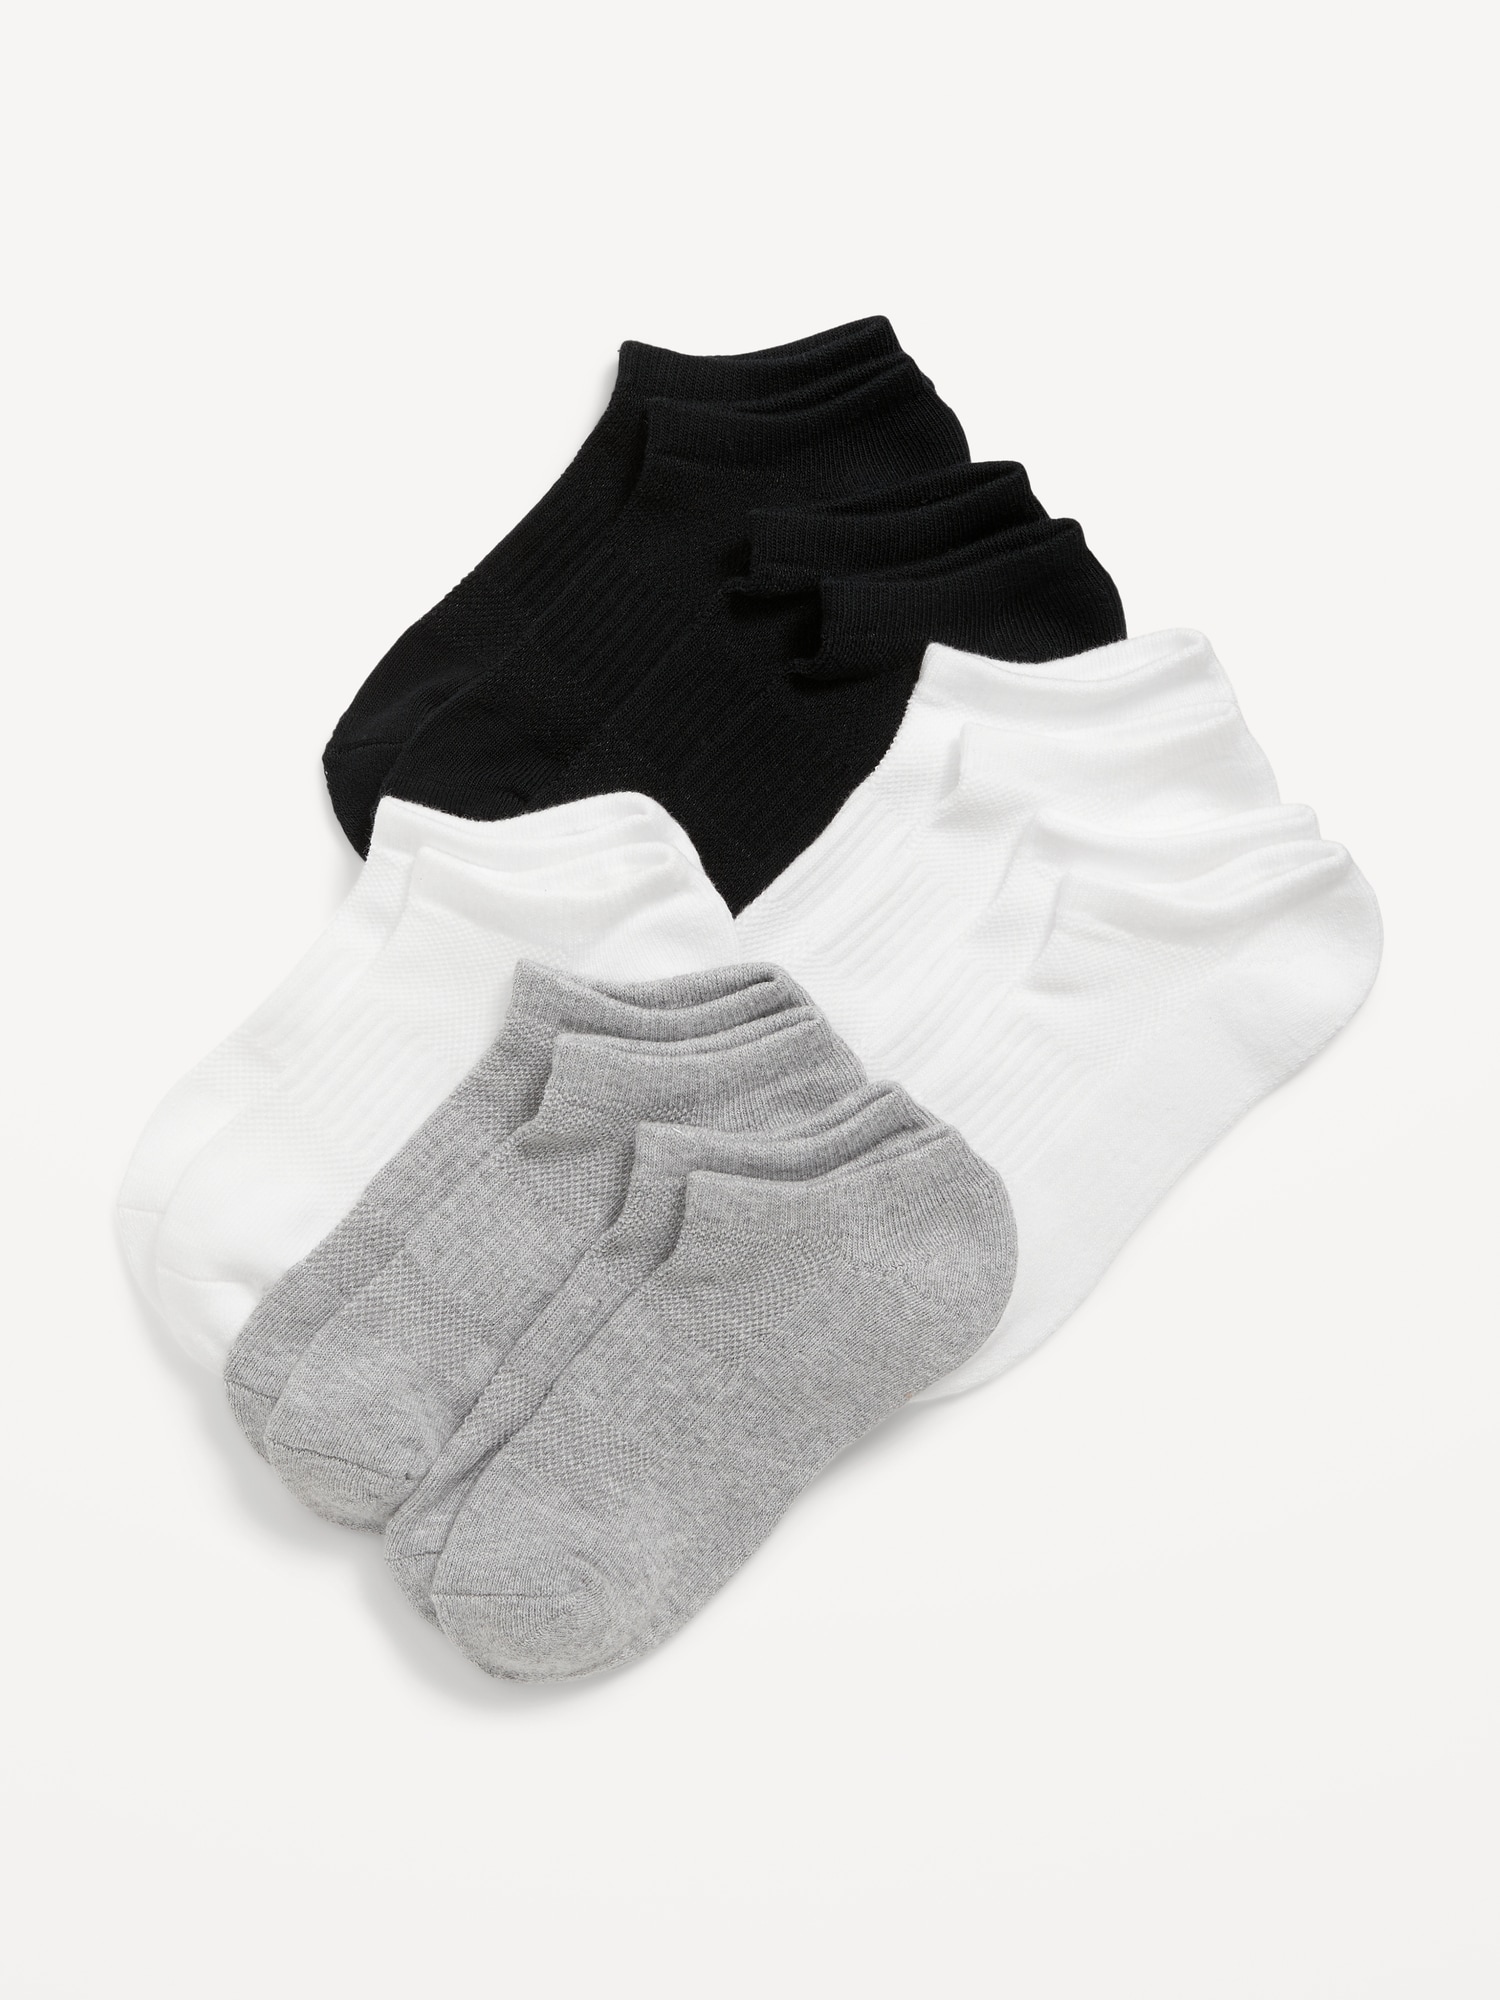 Ankle Socks 7-Pack for Girls